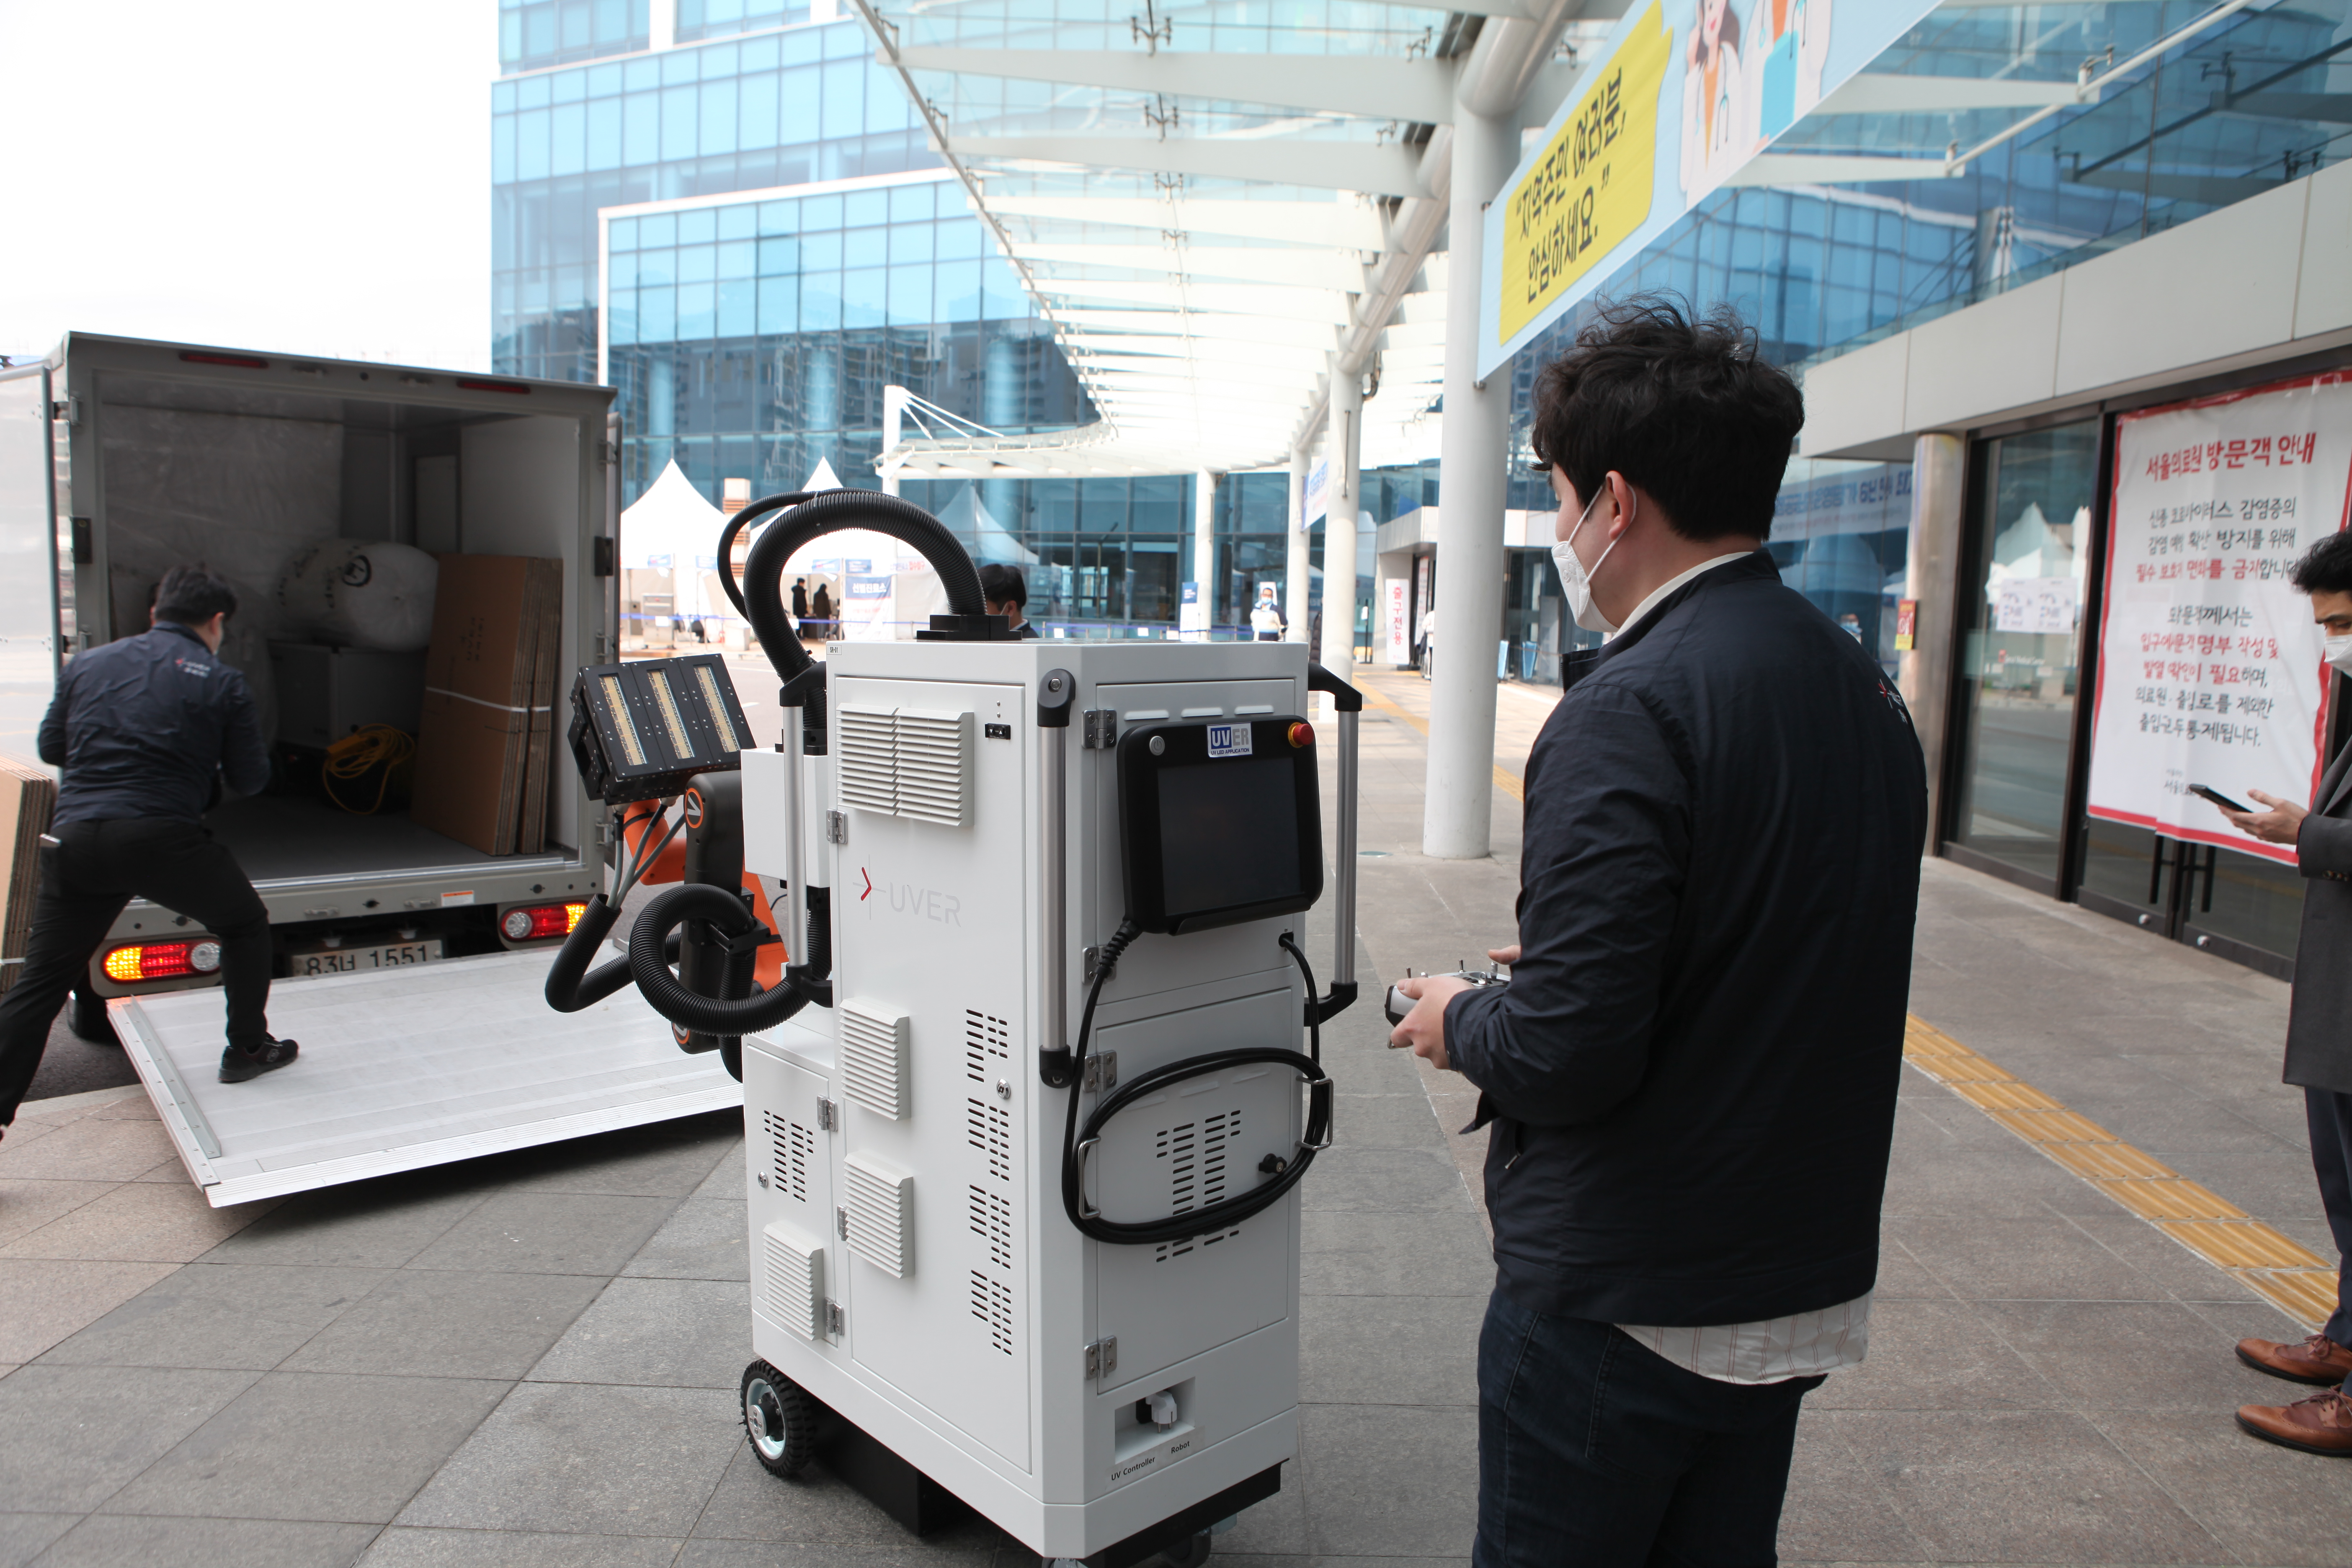  지난 12일부터 서울의료원에 도입된 살균로봇. 자외선 LED 분사·공기 흡입 방식으로 살균해 상시 이용이 가능하다.  서울디지털재단 제공 